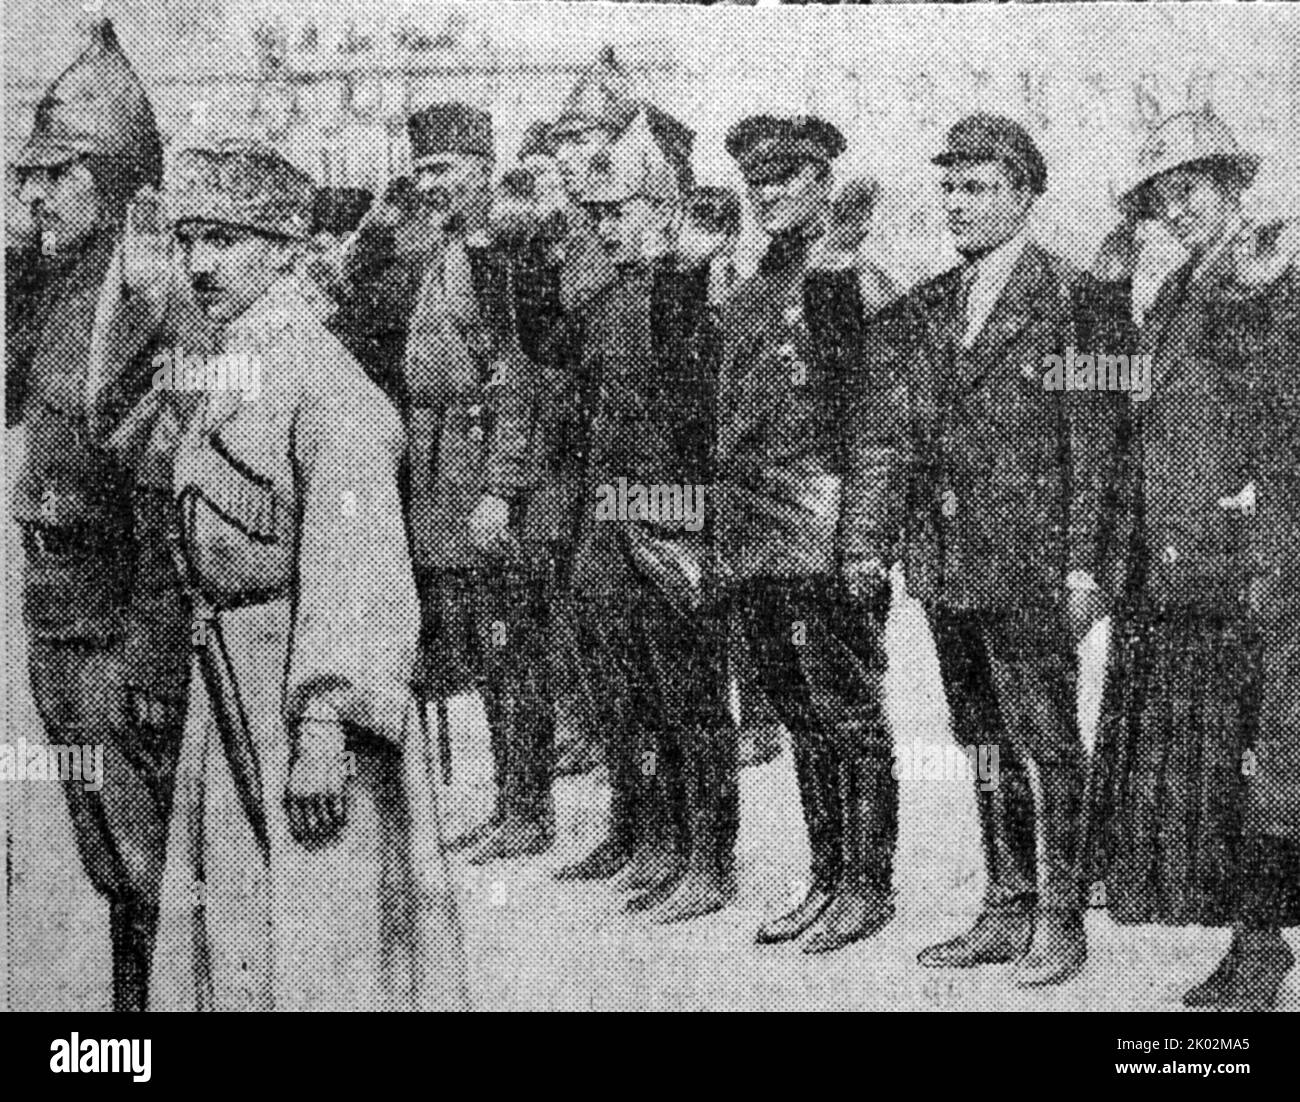 Der revolutionäre Militärrat der Kaukasischen Front nimmt nach seiner Befreiung eine Parade von Einheiten der Armee 11. in Baku ab. In der ersten Reihe (von links nach rechts): G.K. Ordschonikidse, A.I. Mikojan. In der zweiten Reihe - M.A. Mechanoschin, M.K. Lewandowski, S.M. Kirow, F. Tartakovskaya. Mai 1920 Stockfoto